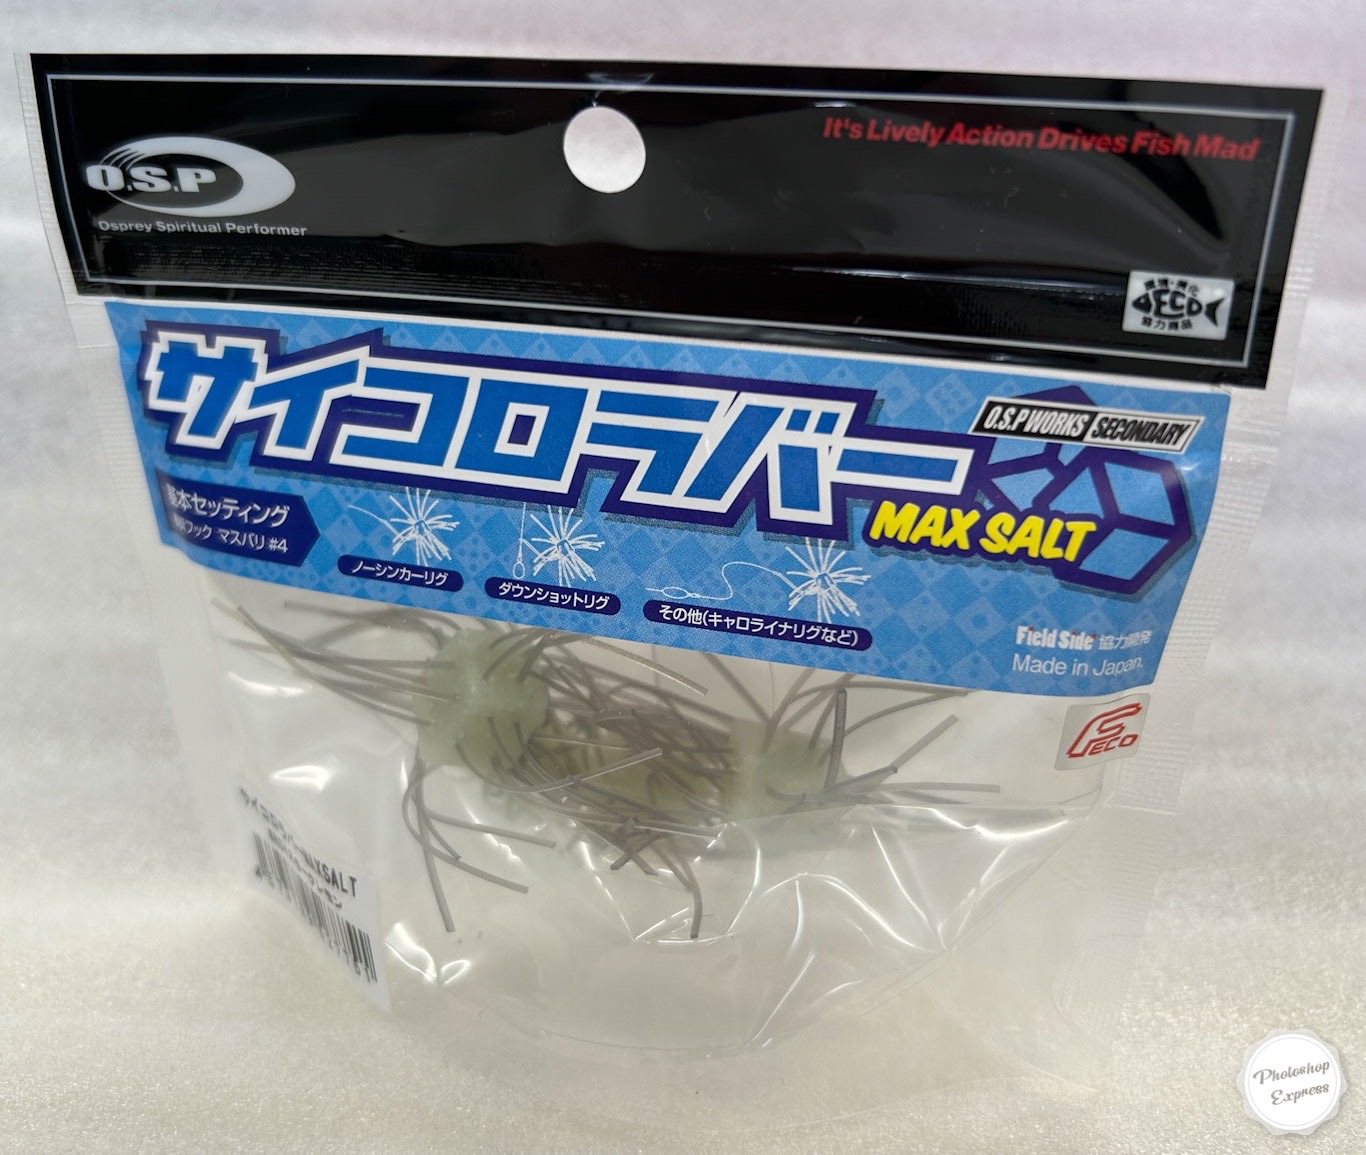 OSP Dice Rubber Lure Saikoro Rubber Max Salt jyosho Shrimp SR08 #f41